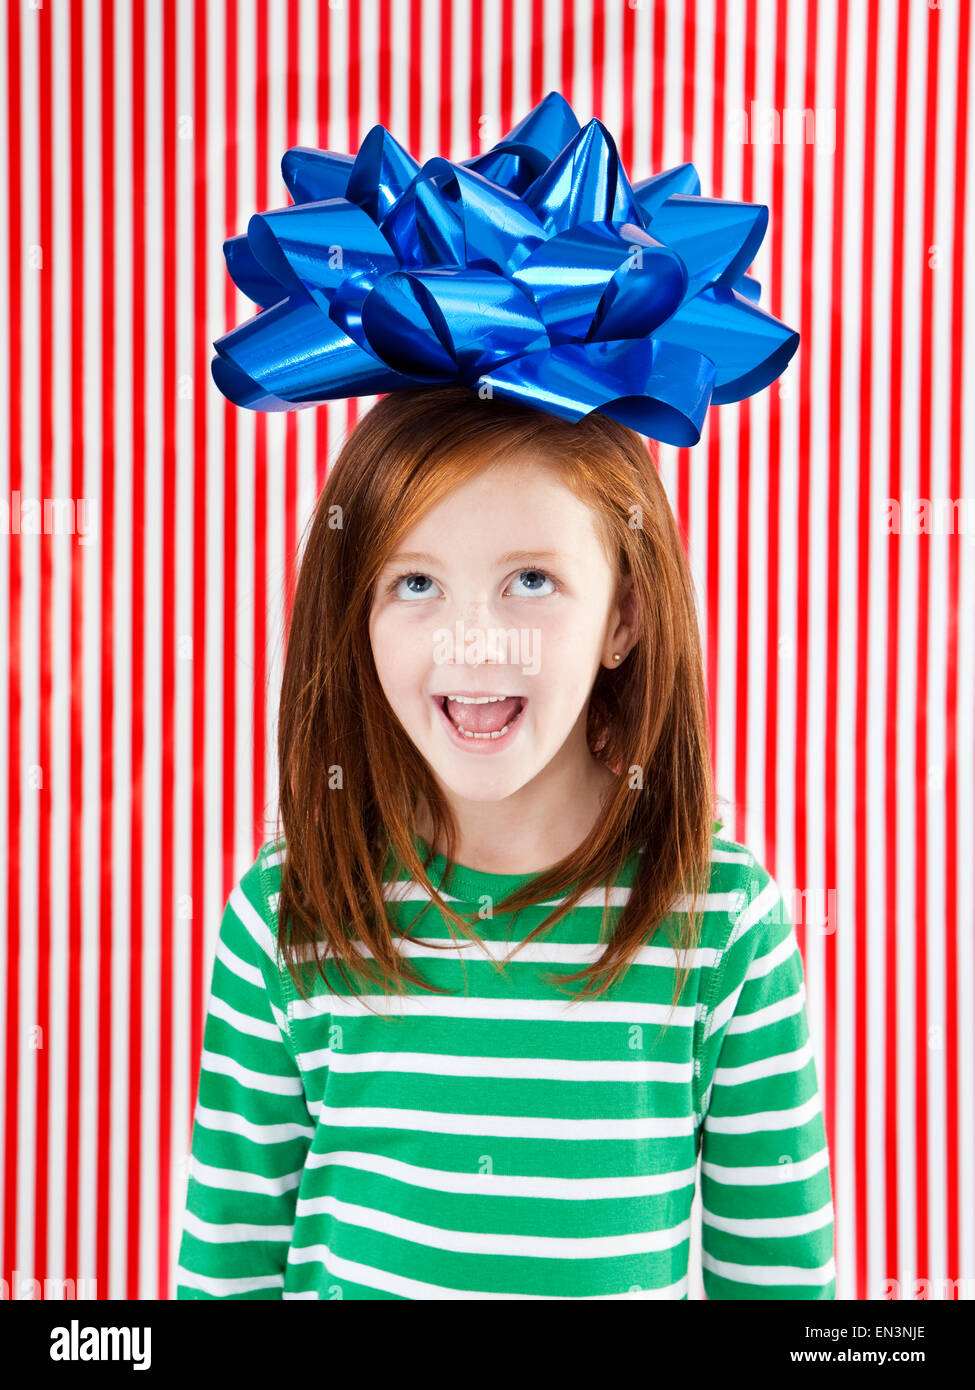 Foto de estudio de chica (4-5) con un gran arco de regalo en la cabeza. Foto de stock